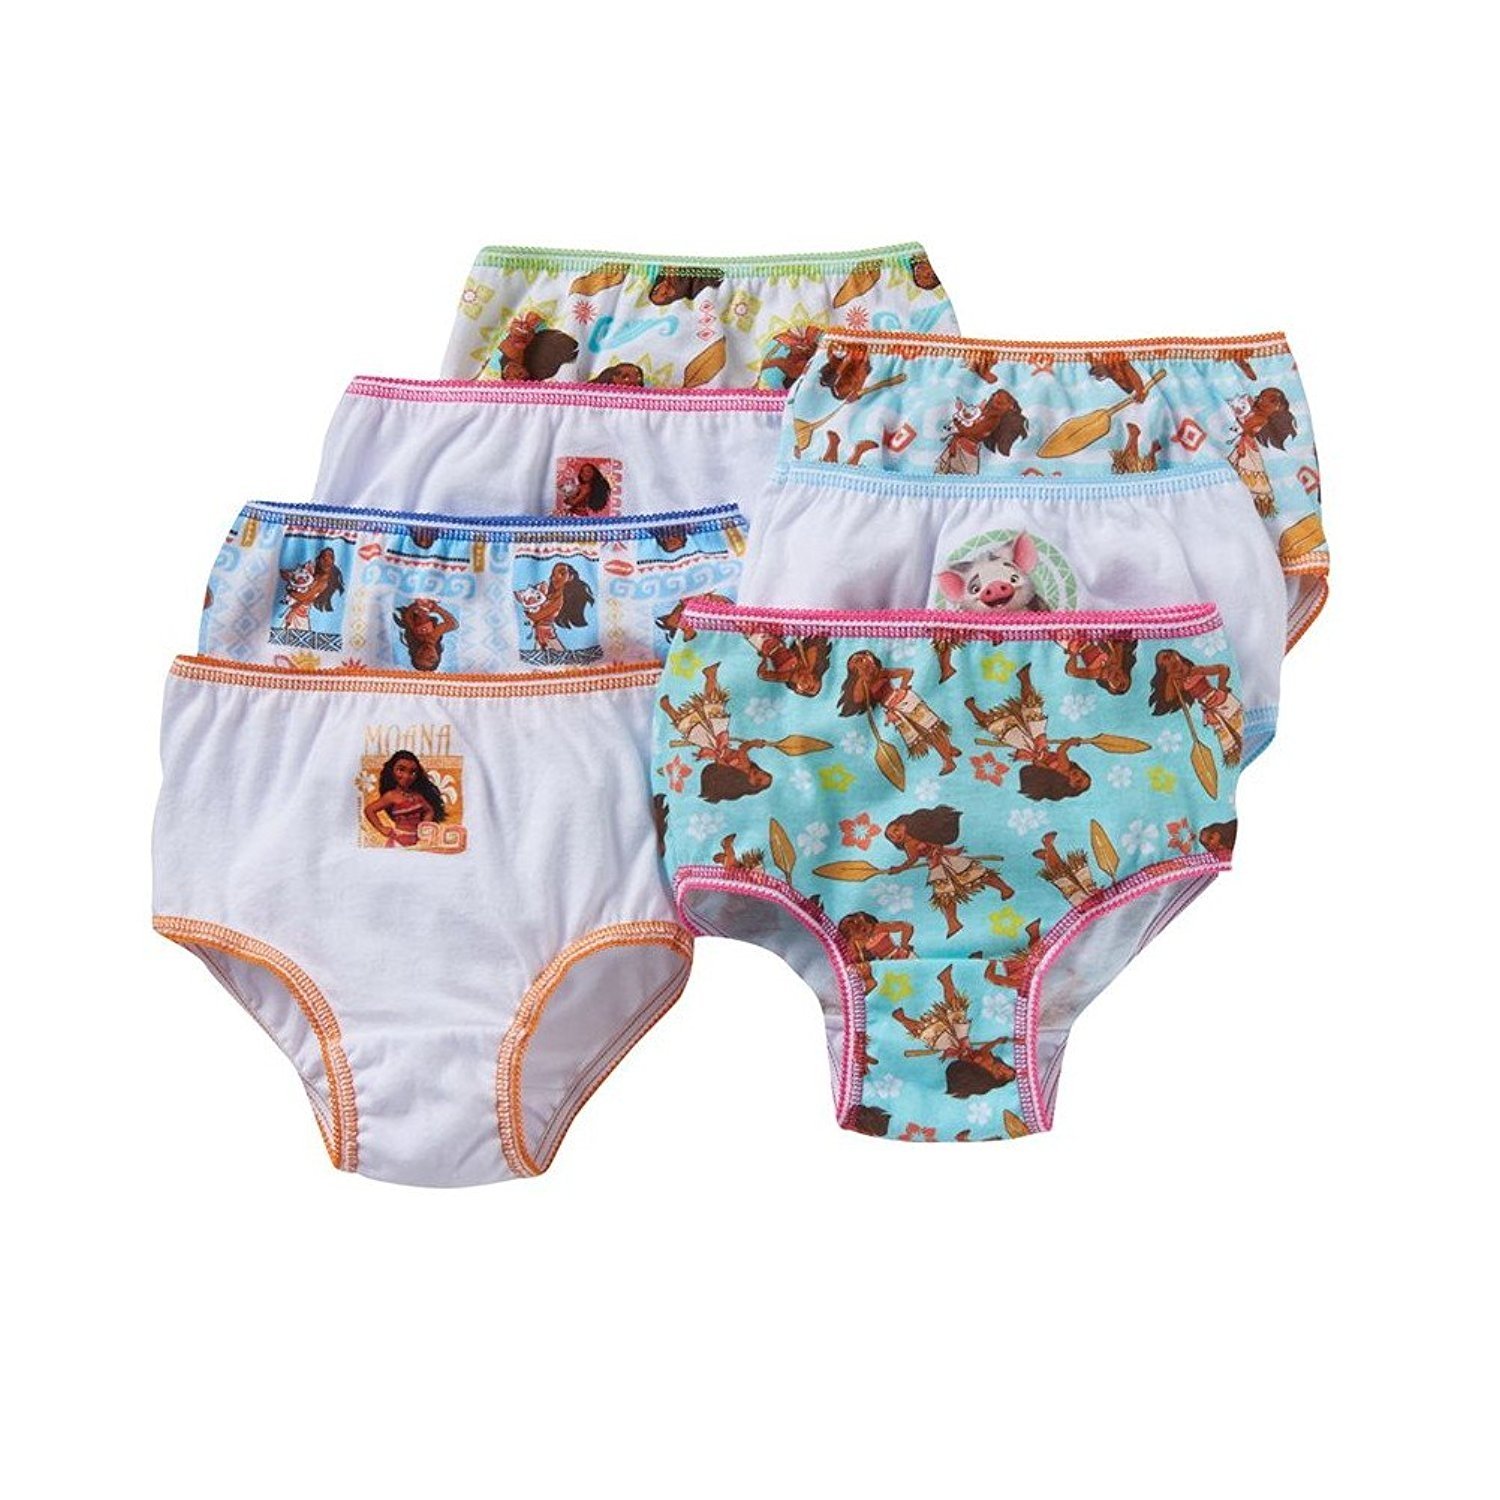 Disney Moana Girls Cotton Panties Underwear 7-Pack Toddler Sizes